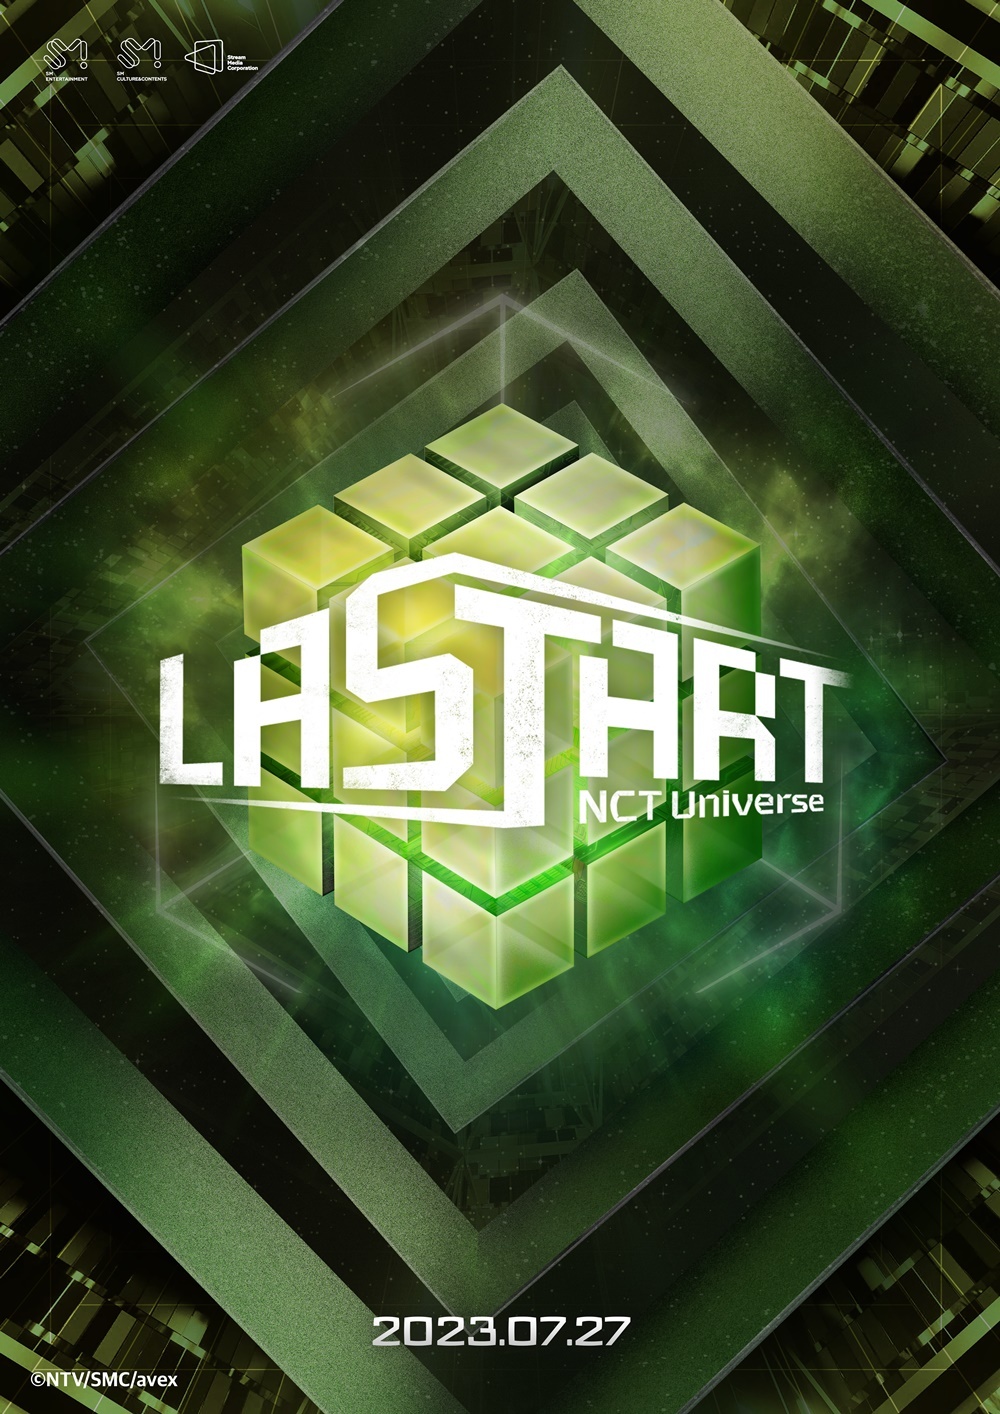 NCT Universe. Lastart